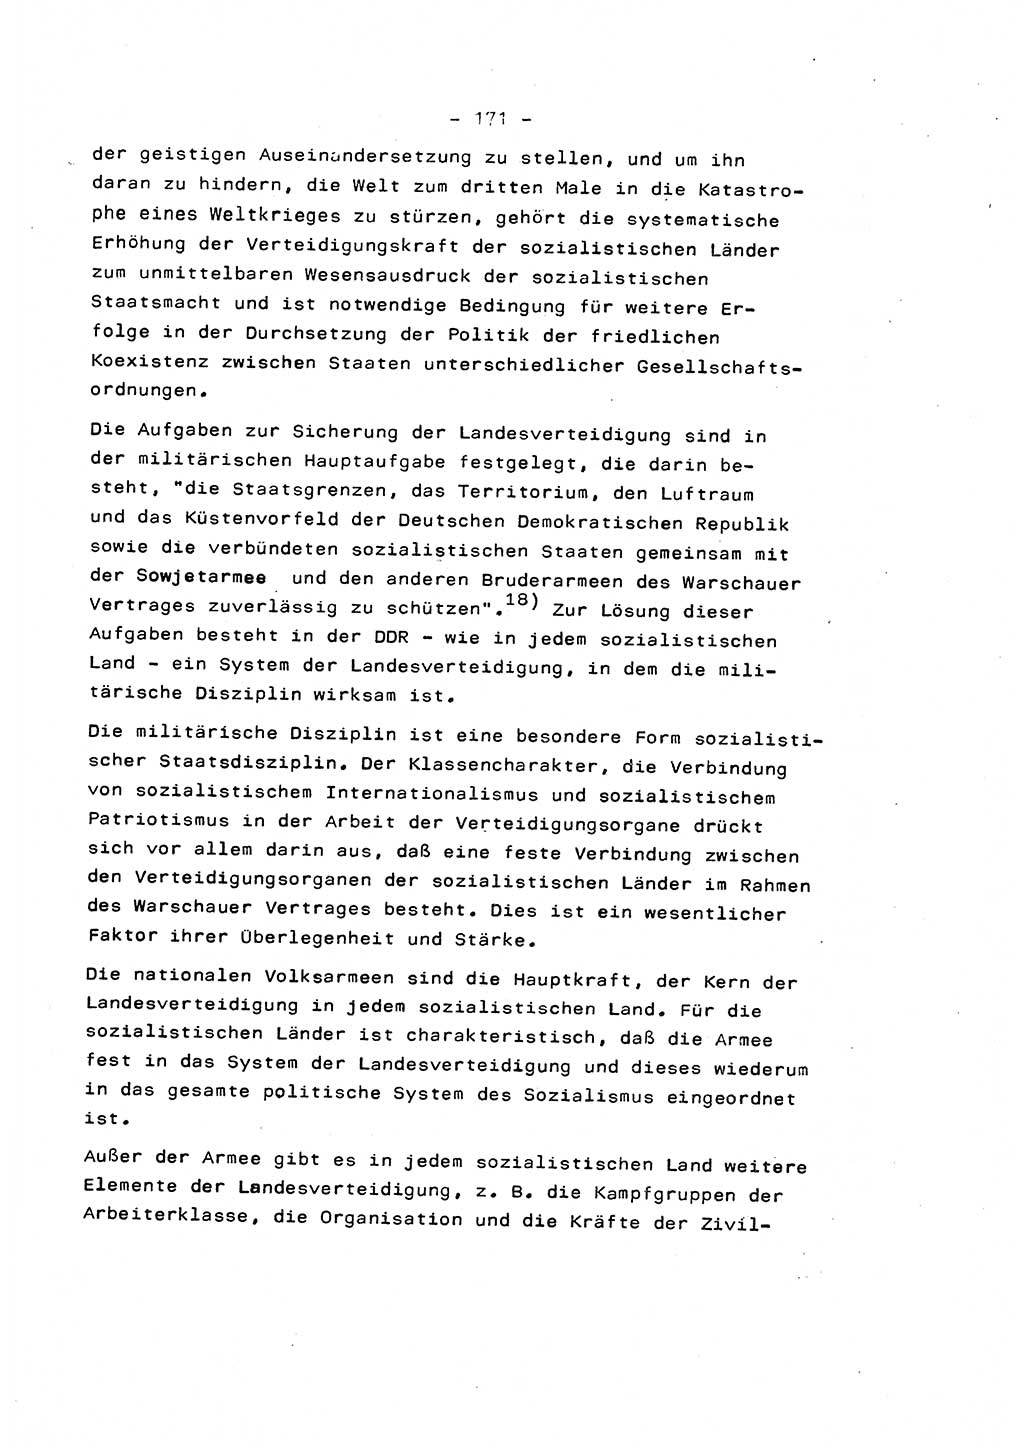 Marxistisch-leninistische Staats- und Rechtstheorie [Deutsche Demokratische Republik (DDR)] 1975, Seite 171 (ML St.-R.-Th. DDR 1975, S. 171)